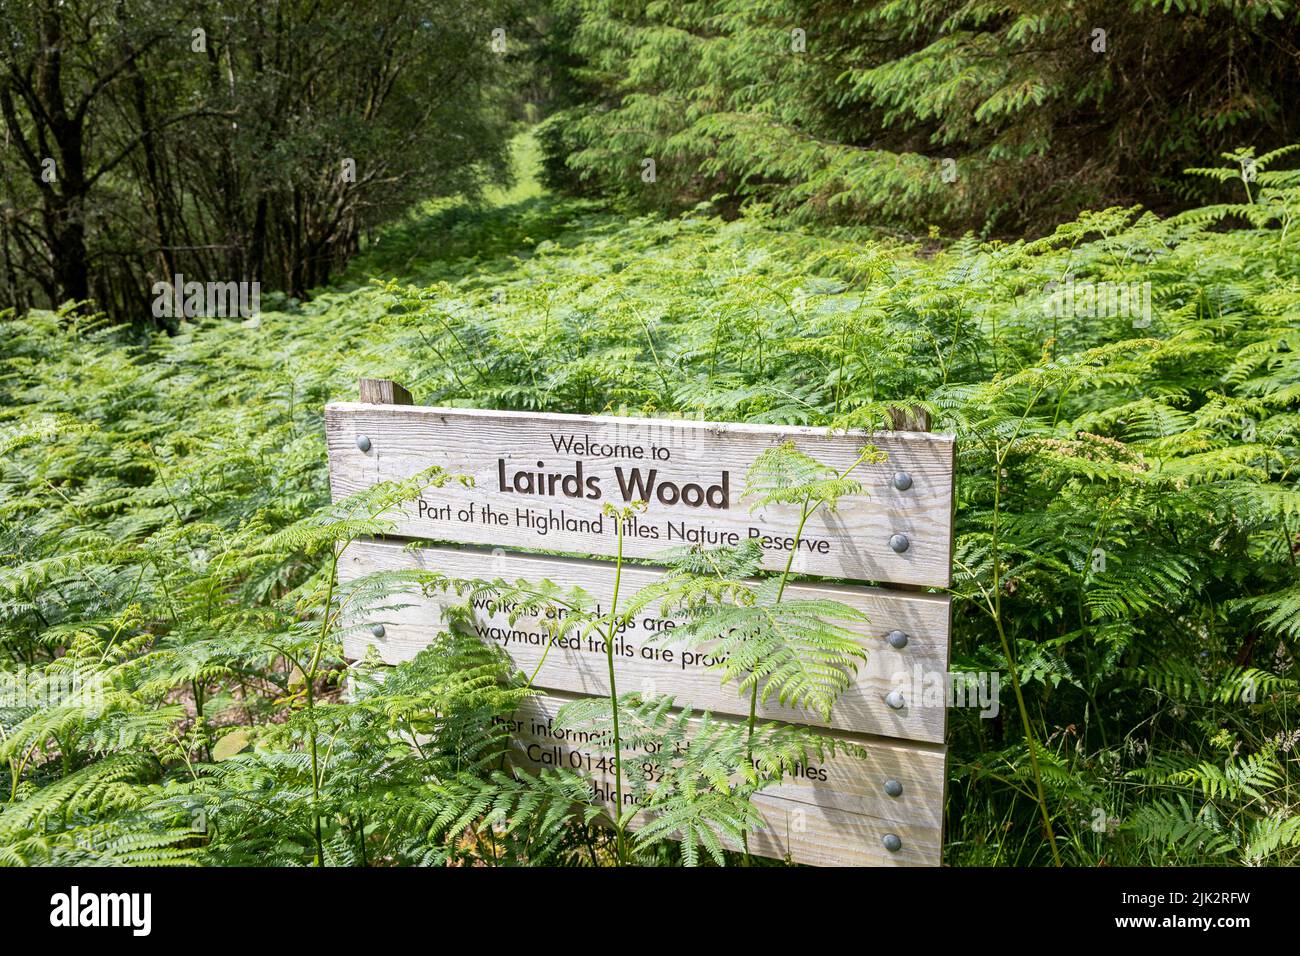 Madera de Lairds, parte de los títulos de la reserva natural de las Tierras Altas escocesas, cerca de Glencoe, Escocia, Reino Unido, verano de 2022 Foto de stock